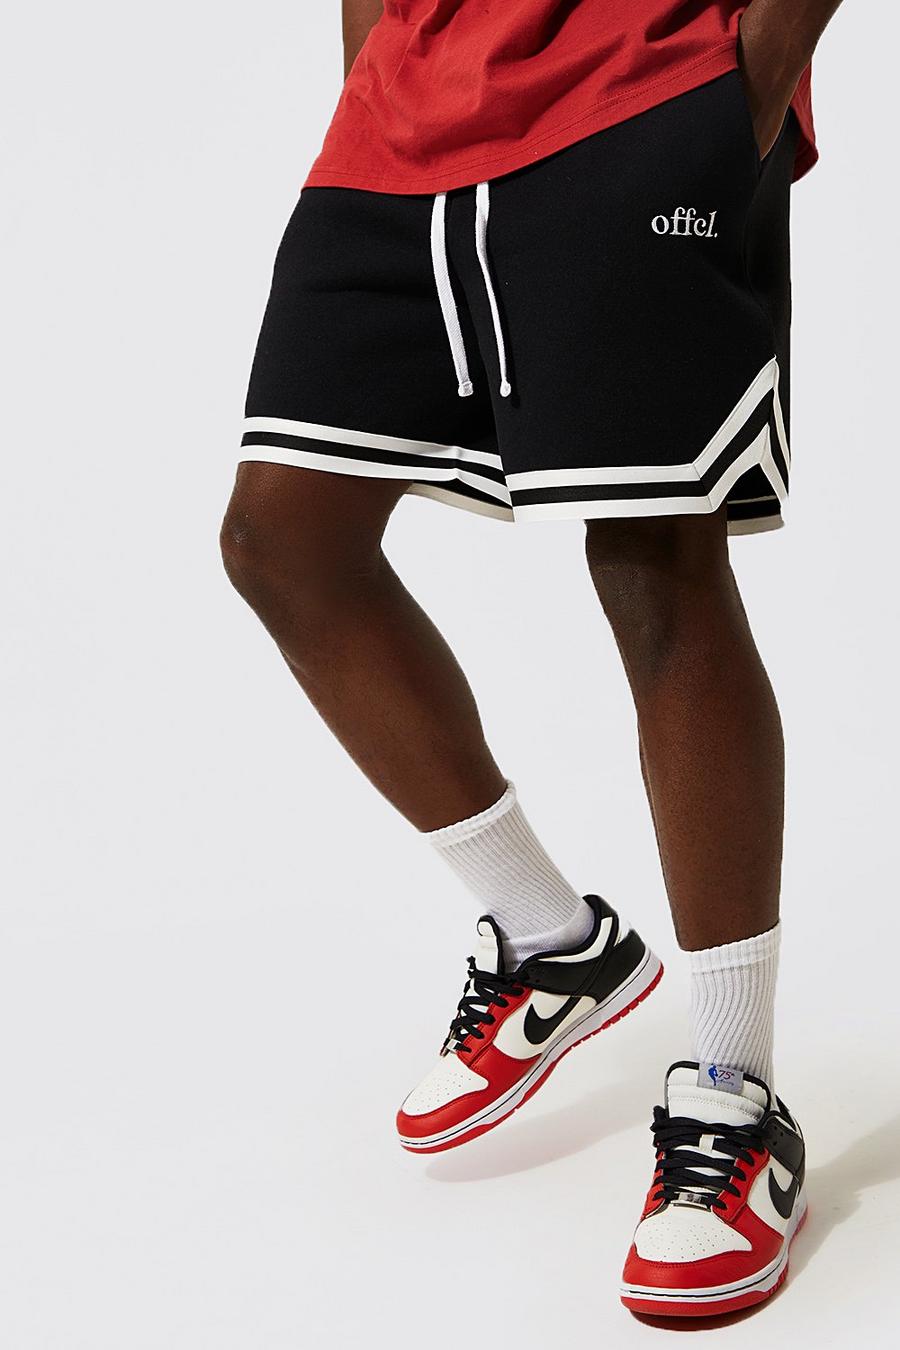 Pantaloncini corti da basket Offcl con strisce laterali, Black negro